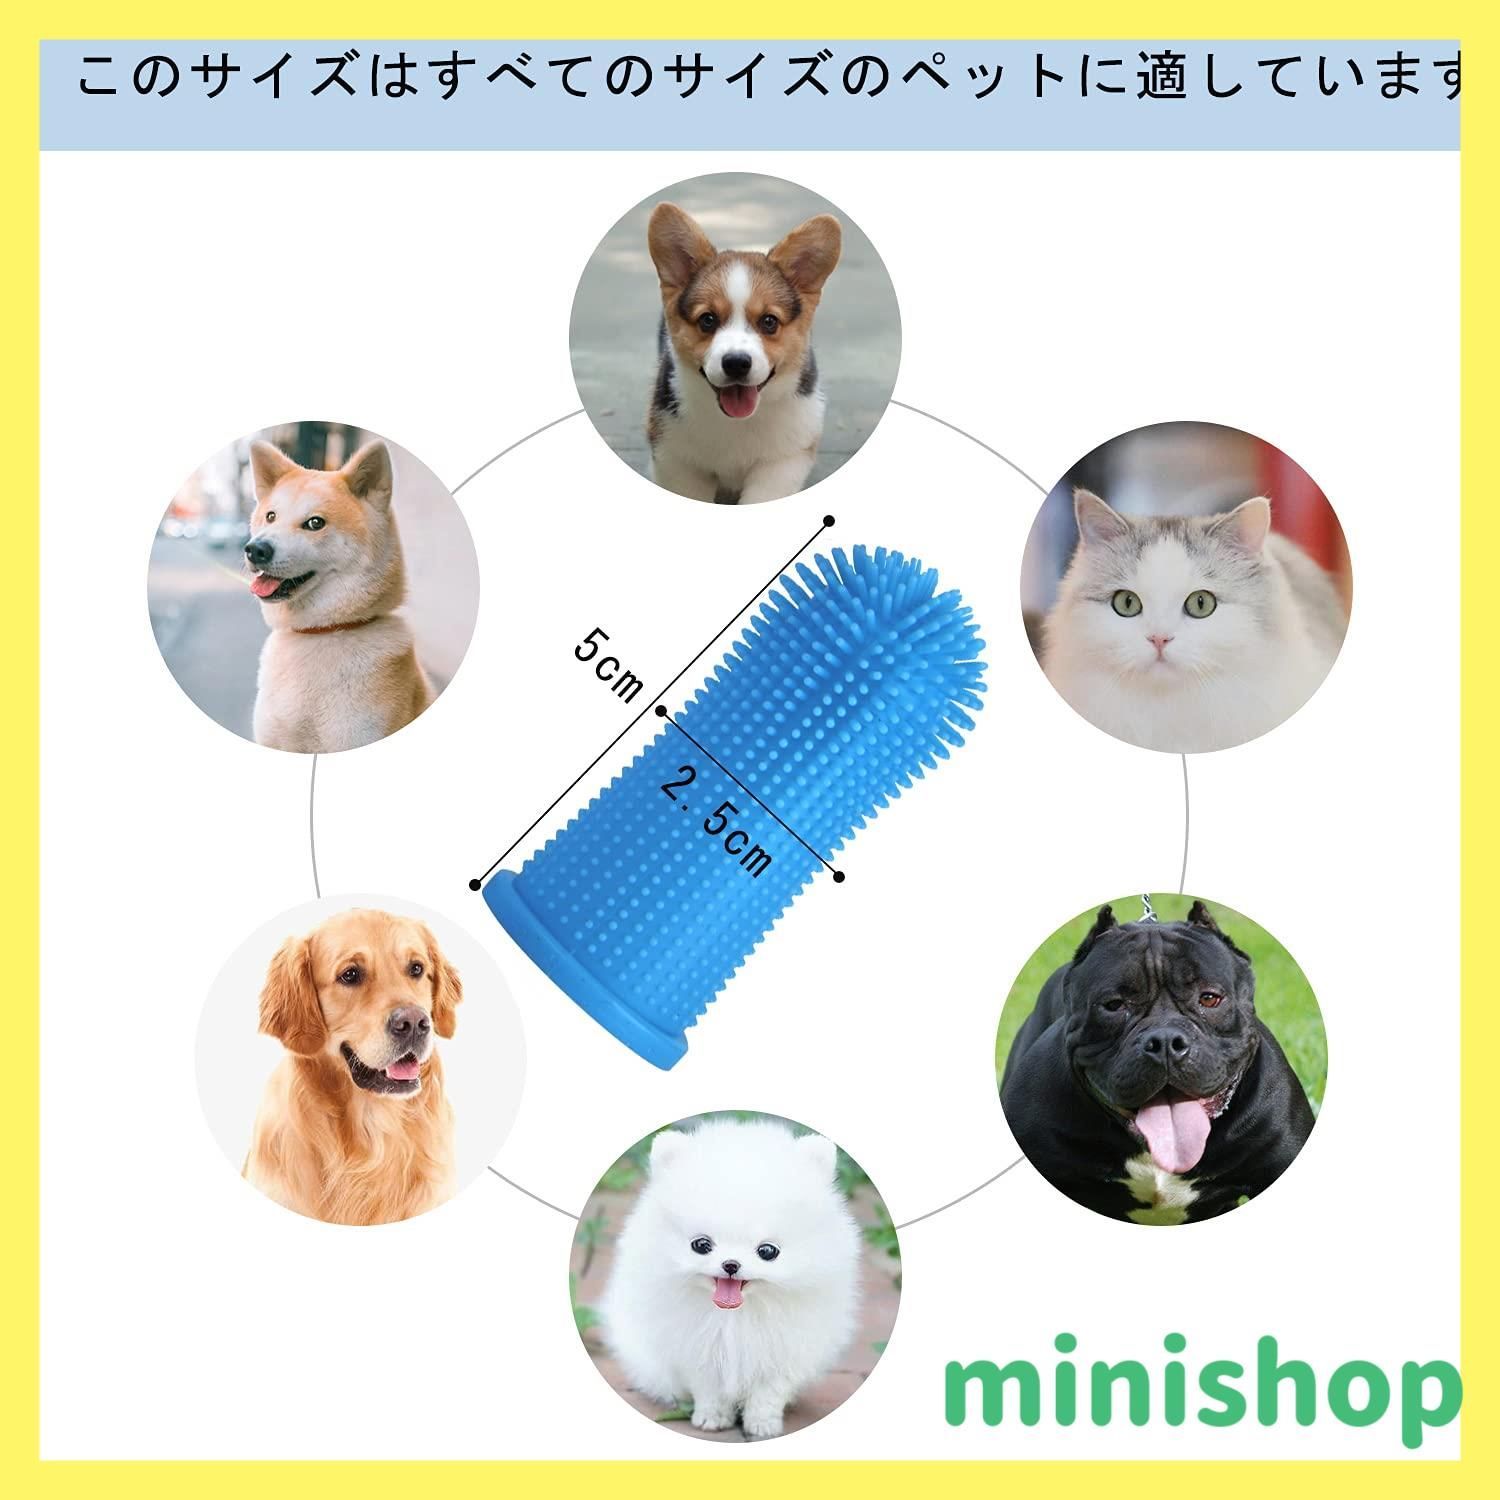 【新着商品】Aujzoo犬歯ブラシ、猫歯ブラシ、360°犬用歯ブラシ、歯ブラシは、犬 はぶらし さまざまな口腔疾患を回避するために、どの犬用歯磨き粉にも使用できます。犬歯ブラシ、シリコン犬の歯ブラシ指ブラシミックスカラーセット4。